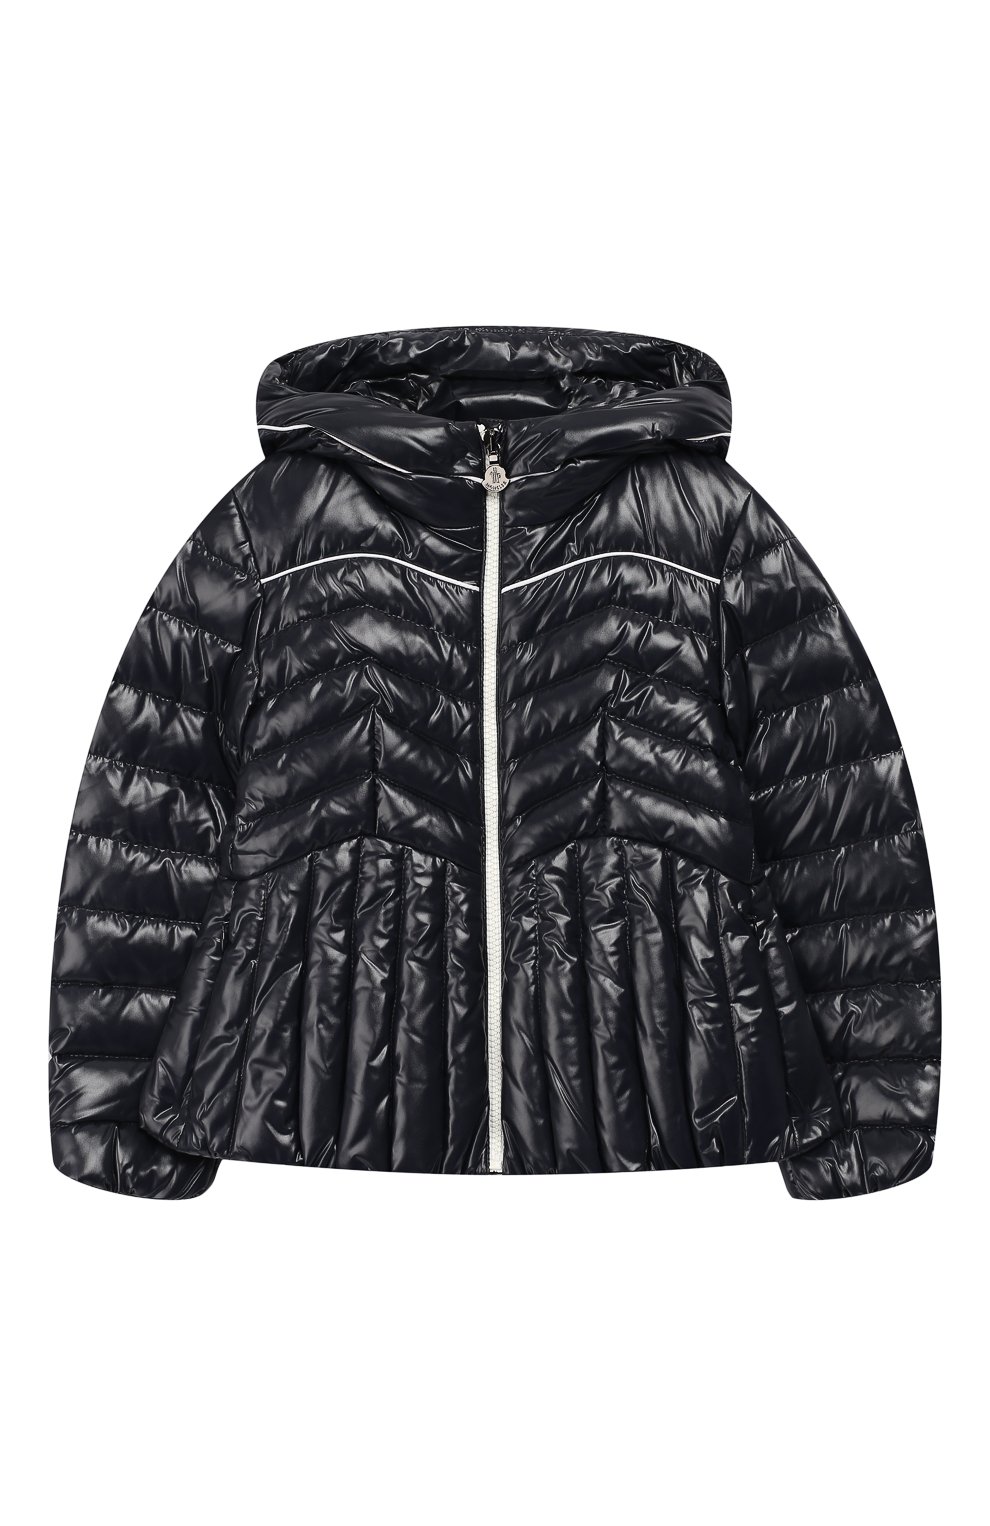 Верхняя одежда Moncler Enfant, Пуховая куртка на молнии с капюшоном Moncler Enfant, Венгрия, Синий, Наполнитель-гусиный пух: 90%; Полиамид: 100%; Подкладка-полиамид: 100%; Наполнитель-гусиное перо: 10%;, 5910960  - купить